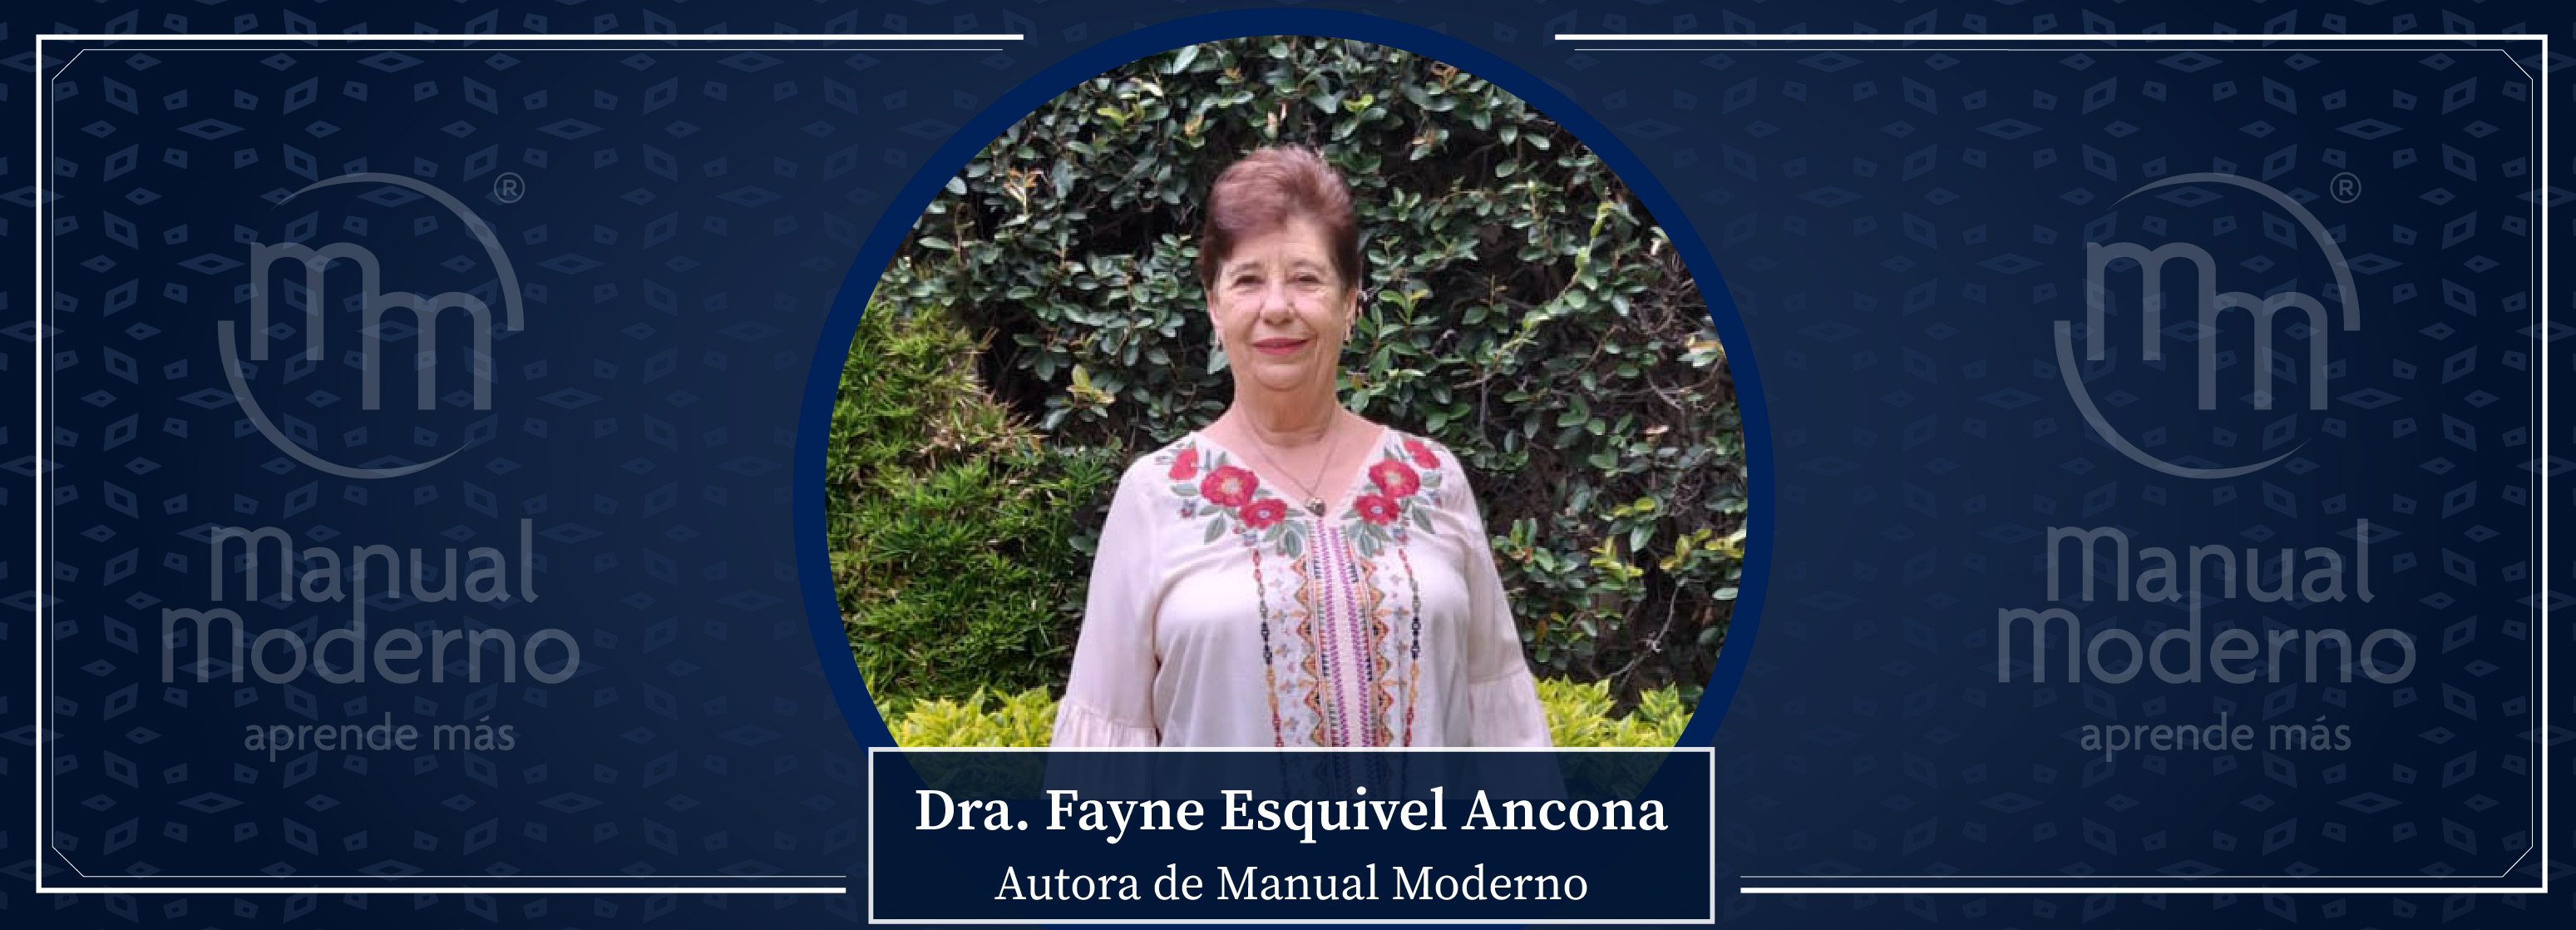 Nuestros Autores. Dra. Fayne Esquivel Ancona